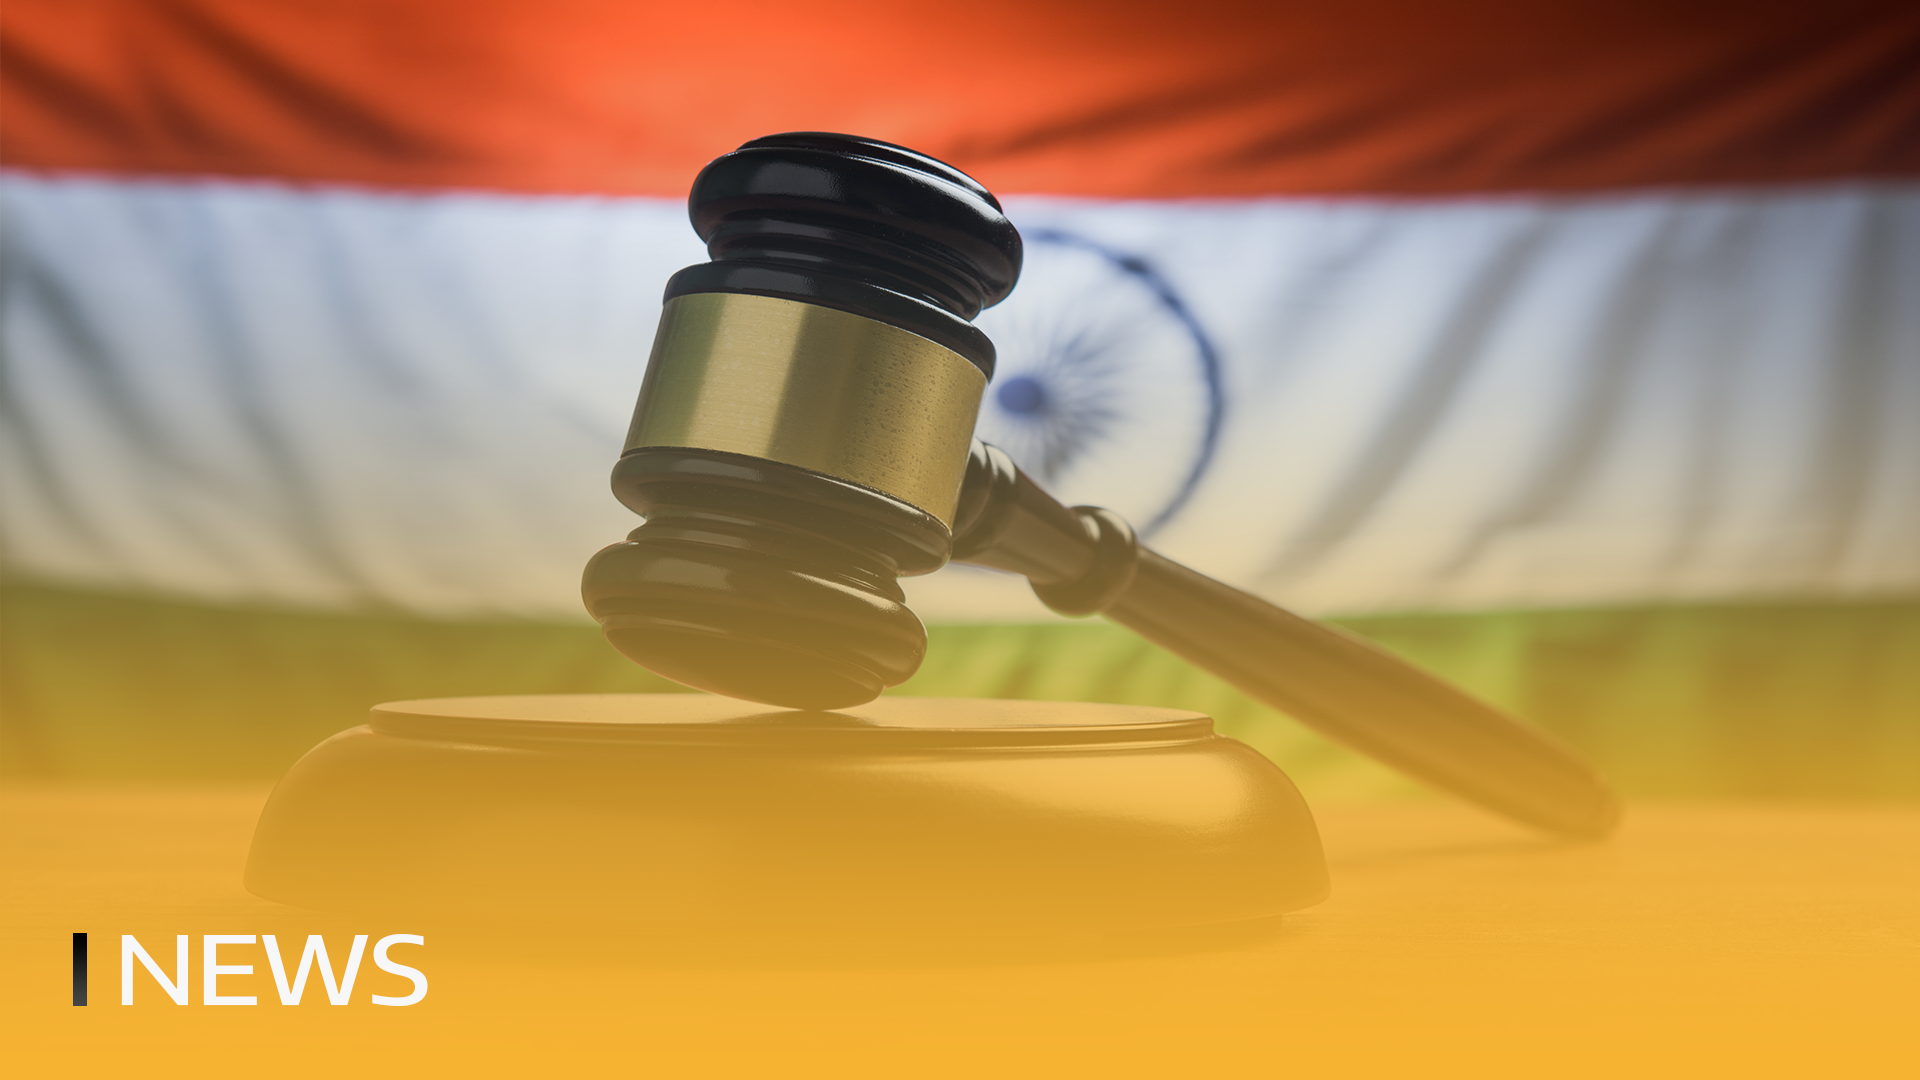 Η Ινδία μπορεί να μπλοκάρει την Binance για παράνομη λειτουργία